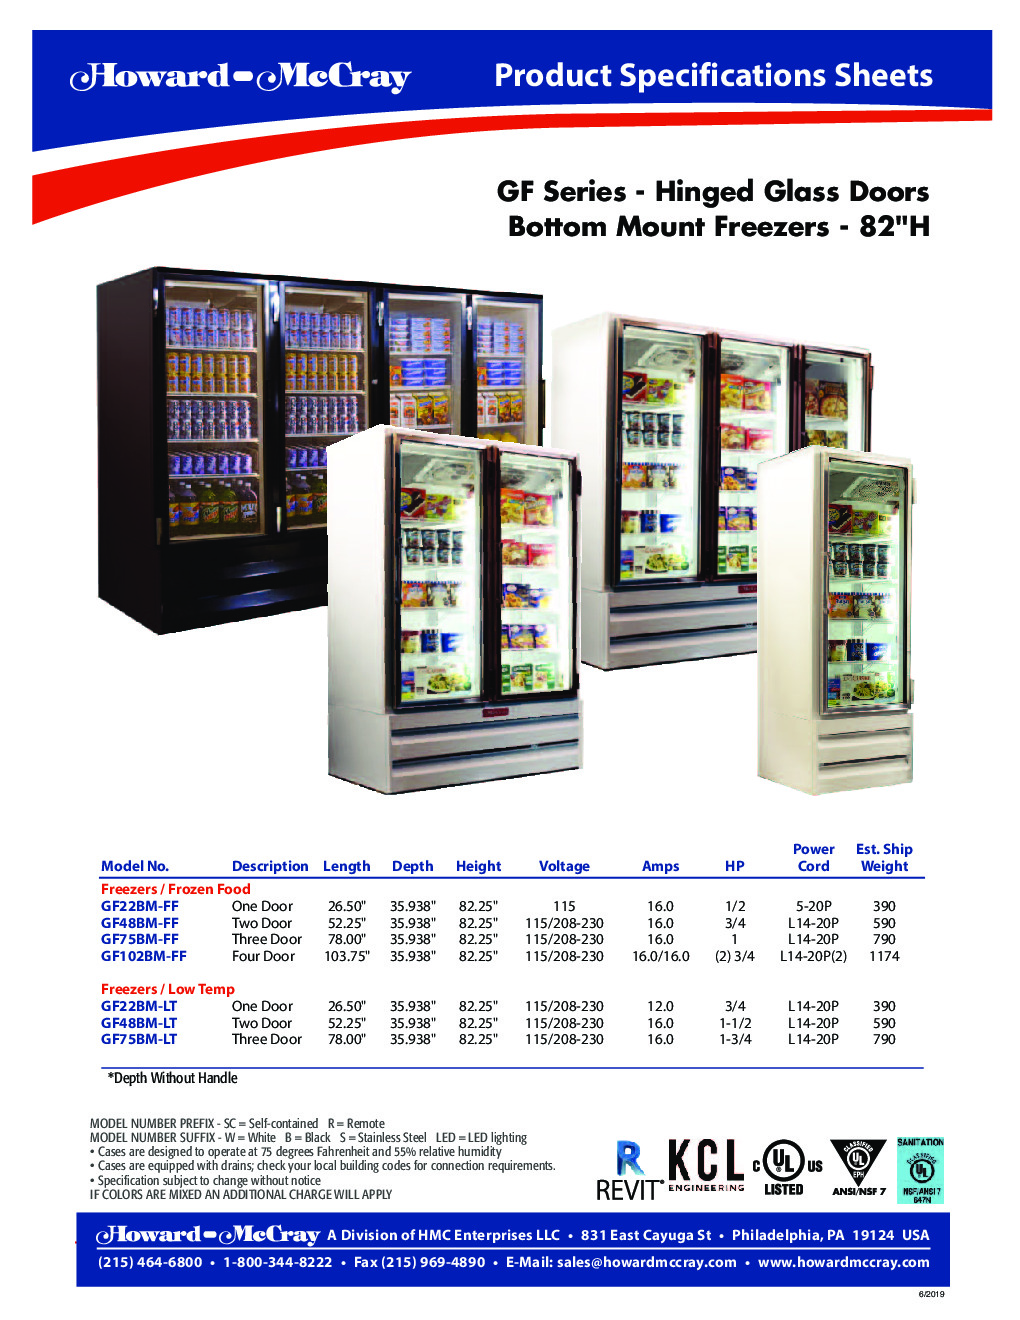 Howard-McCray GF48BM-LT Merchandiser Freezer